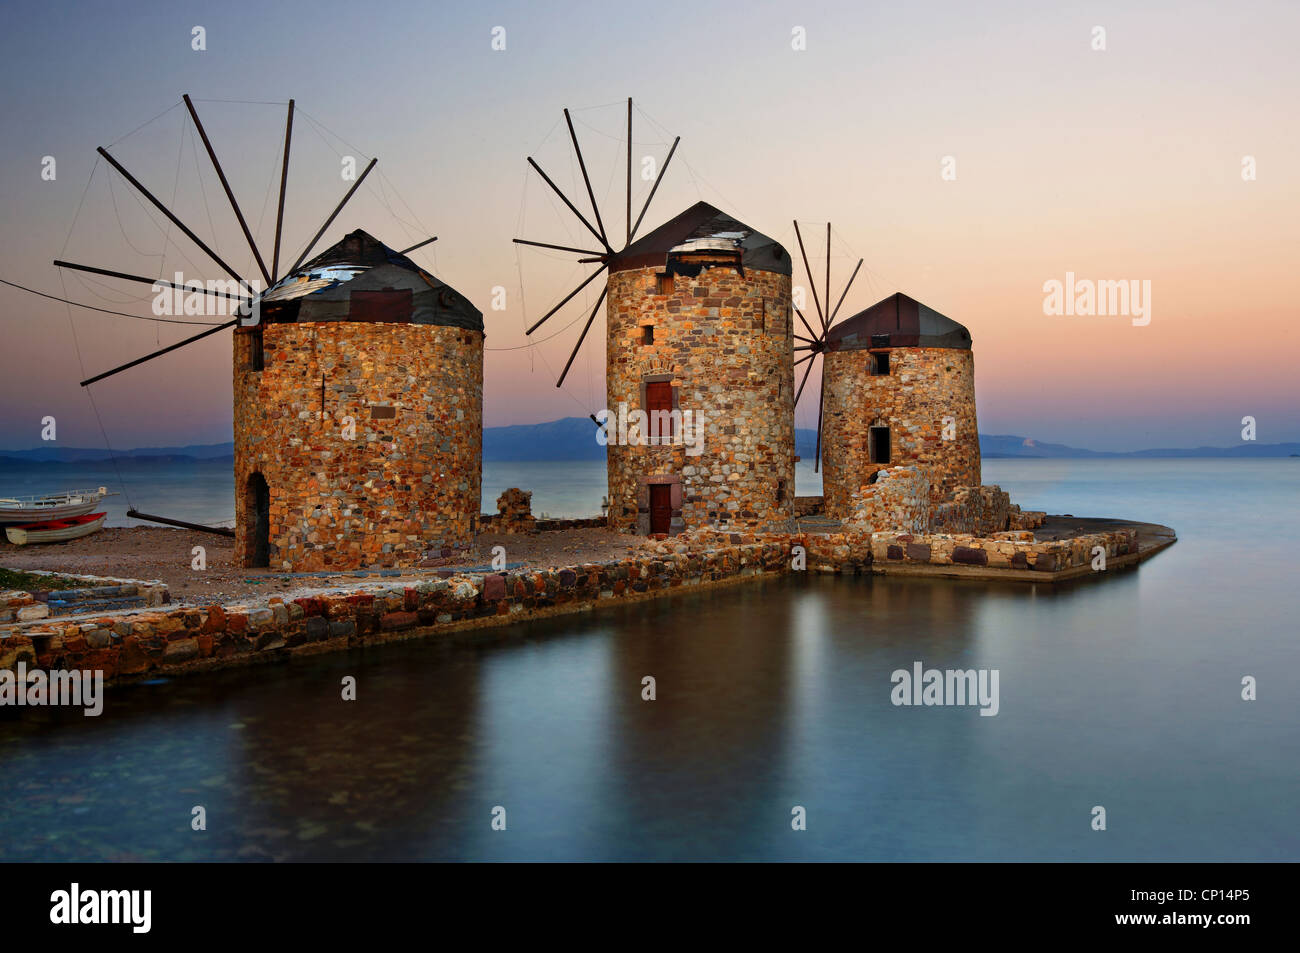 Beaux moulins à vent en bord de mer, dans la ville de Chios, l'île de Chios, au nord-est de la mer Égée, Grèce Banque D'Images